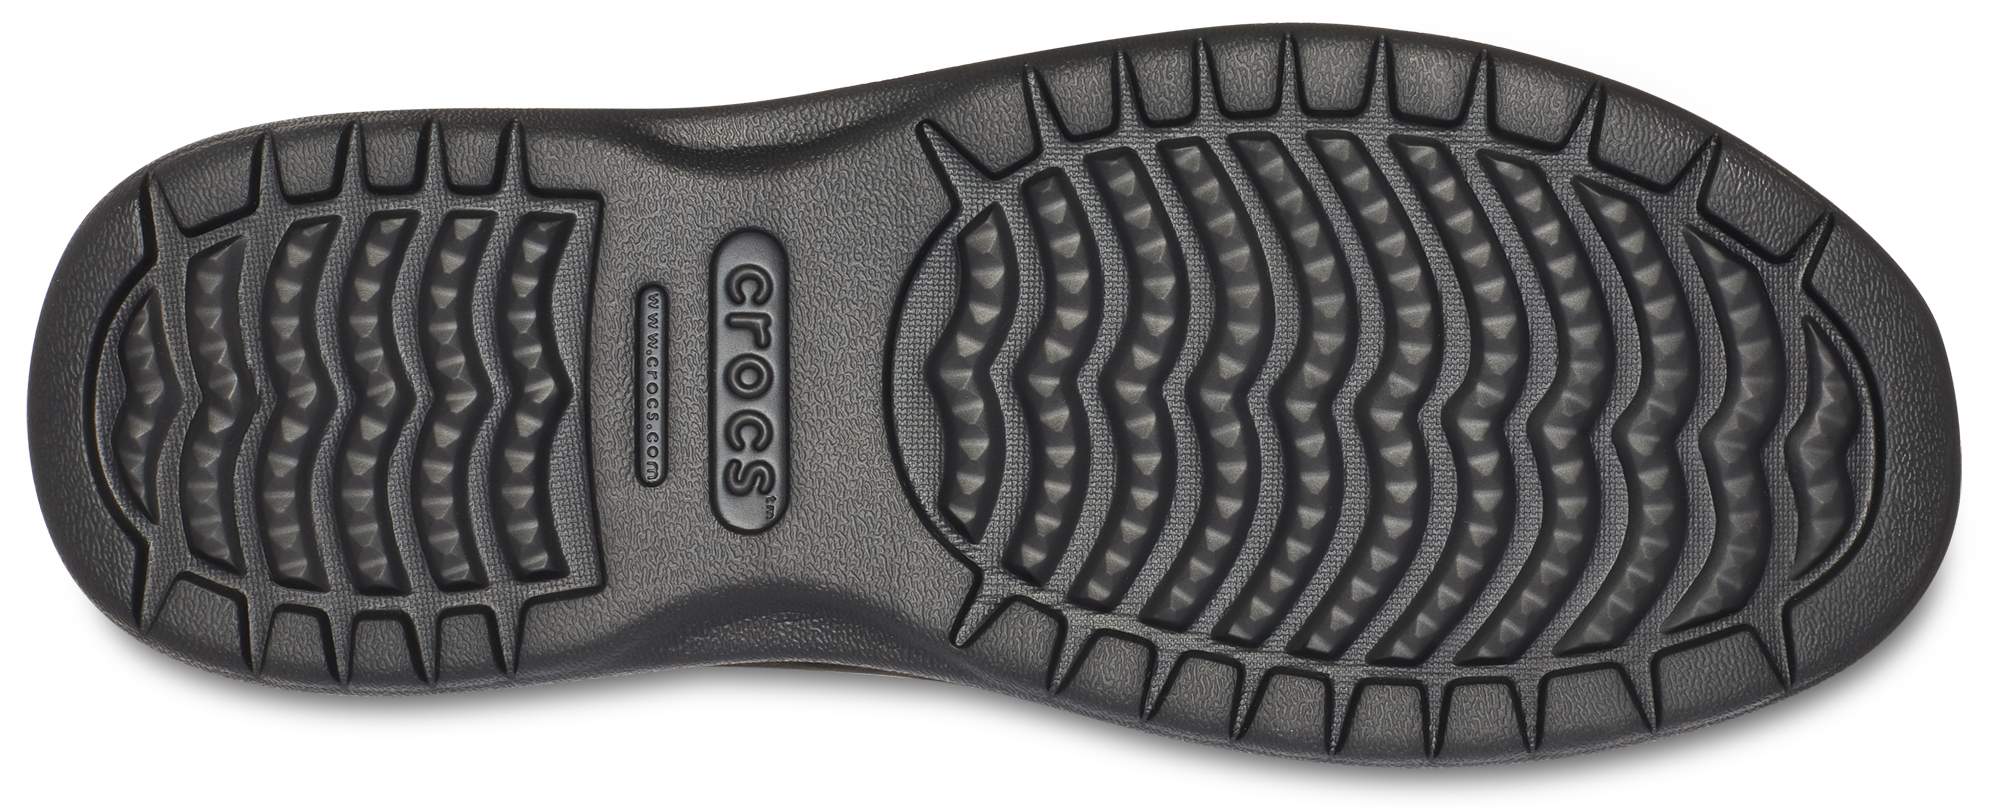 crocs santa cruz convertible men's shoes